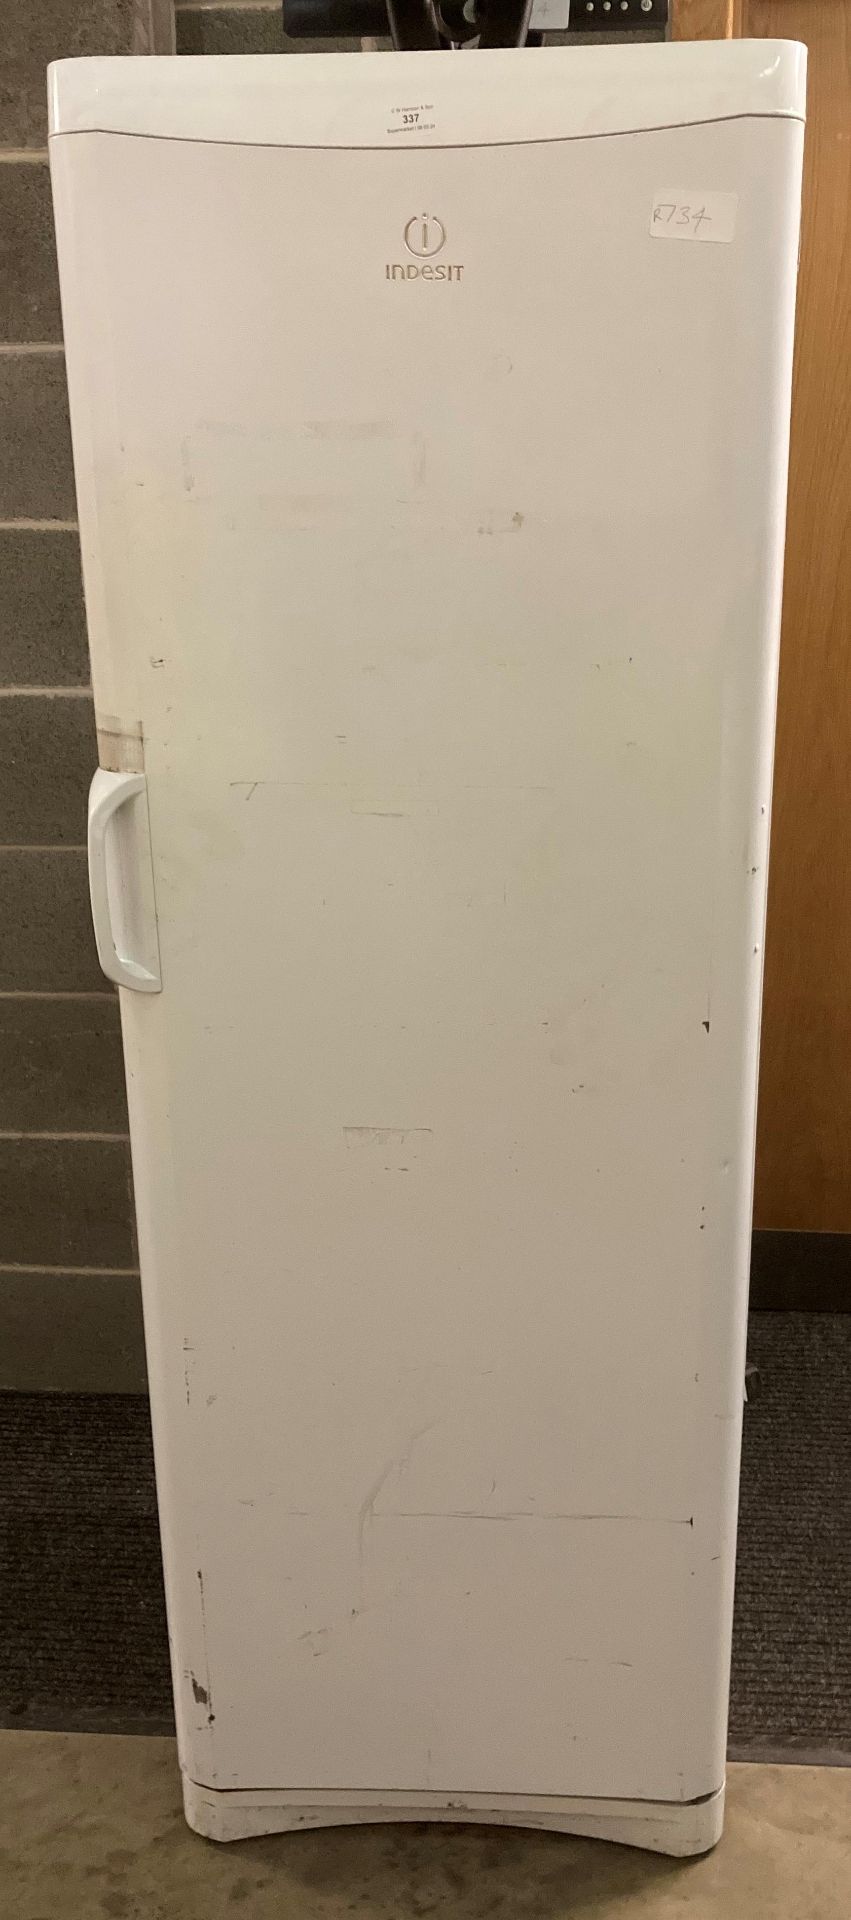 Indesit upright fridge in white, - Image 2 of 2